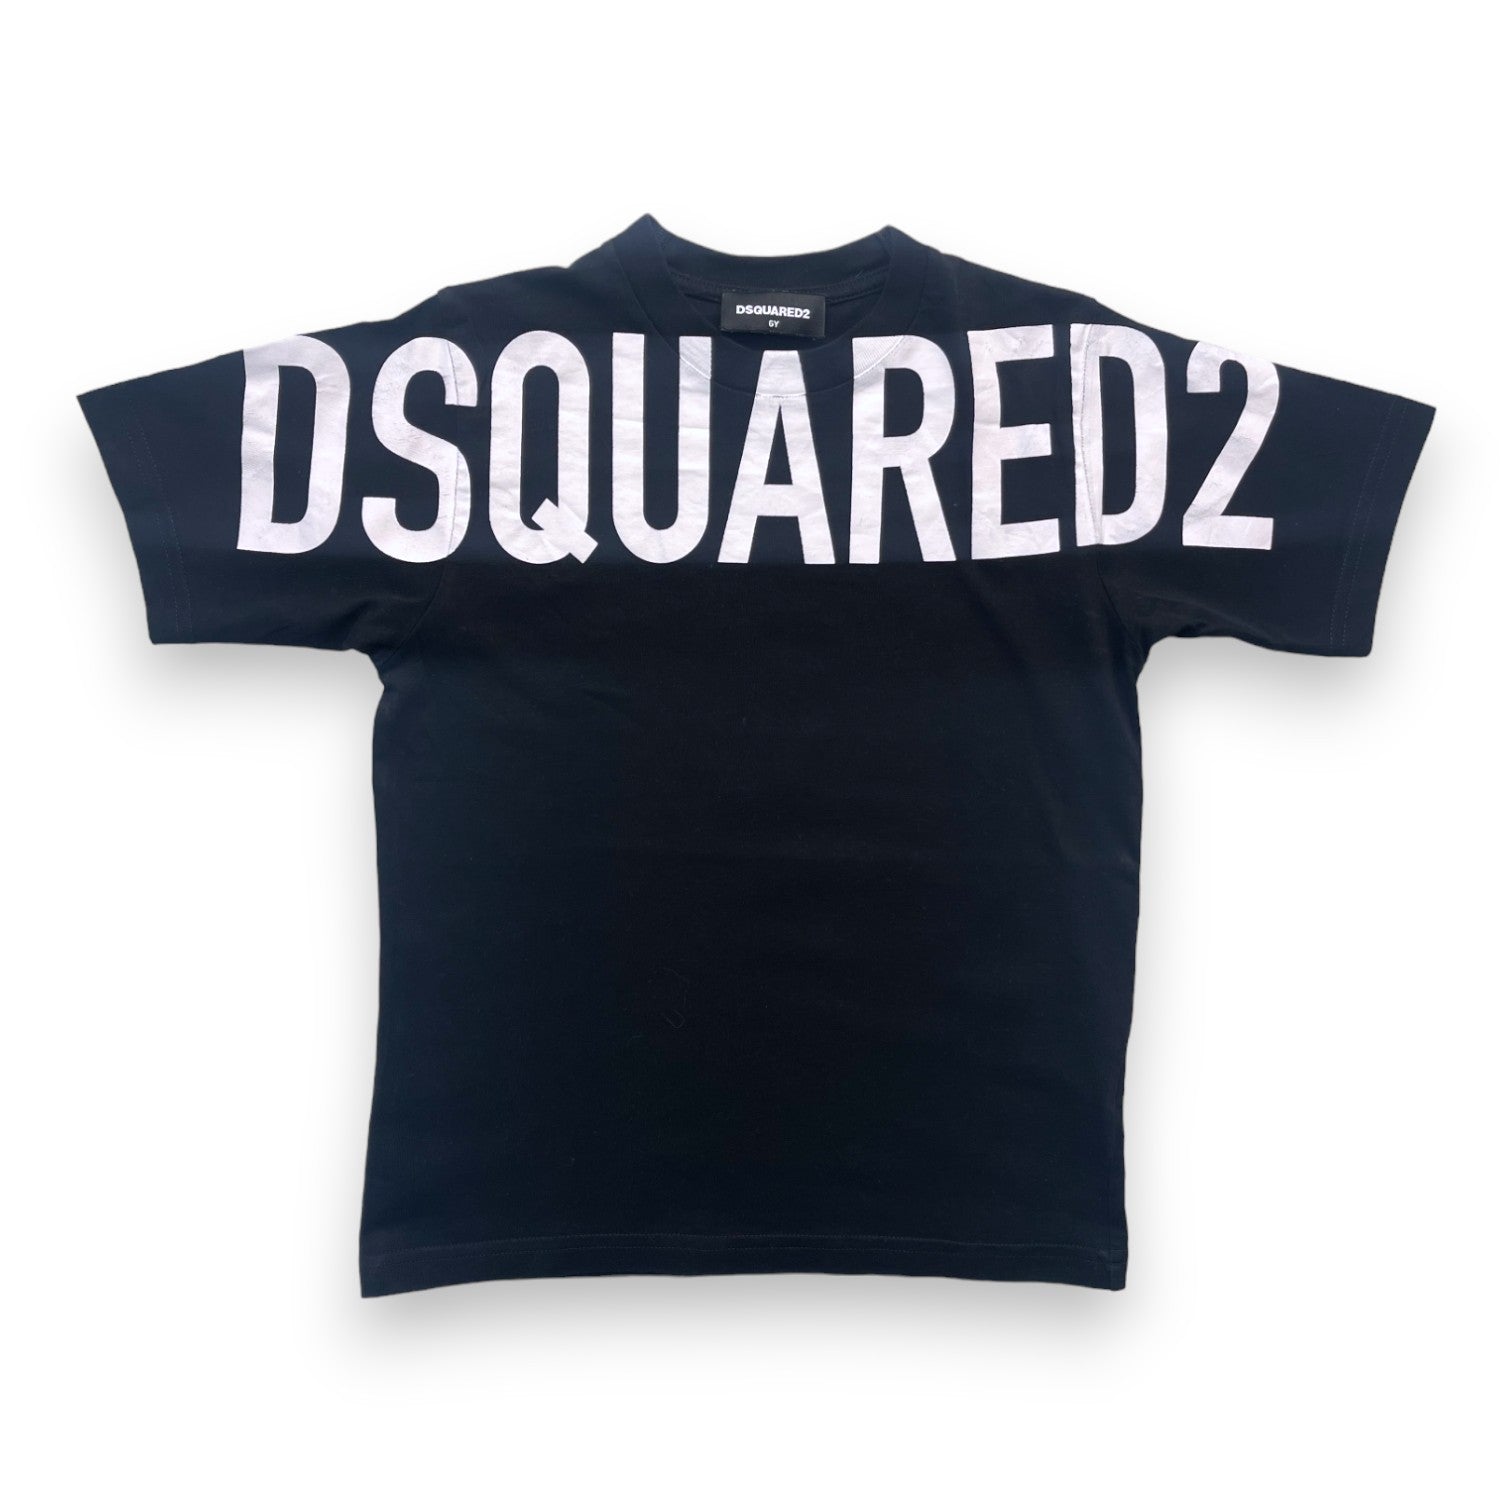 DSQUARED - T shirt noir inscription "DSQUARED" blanche - 6 ans